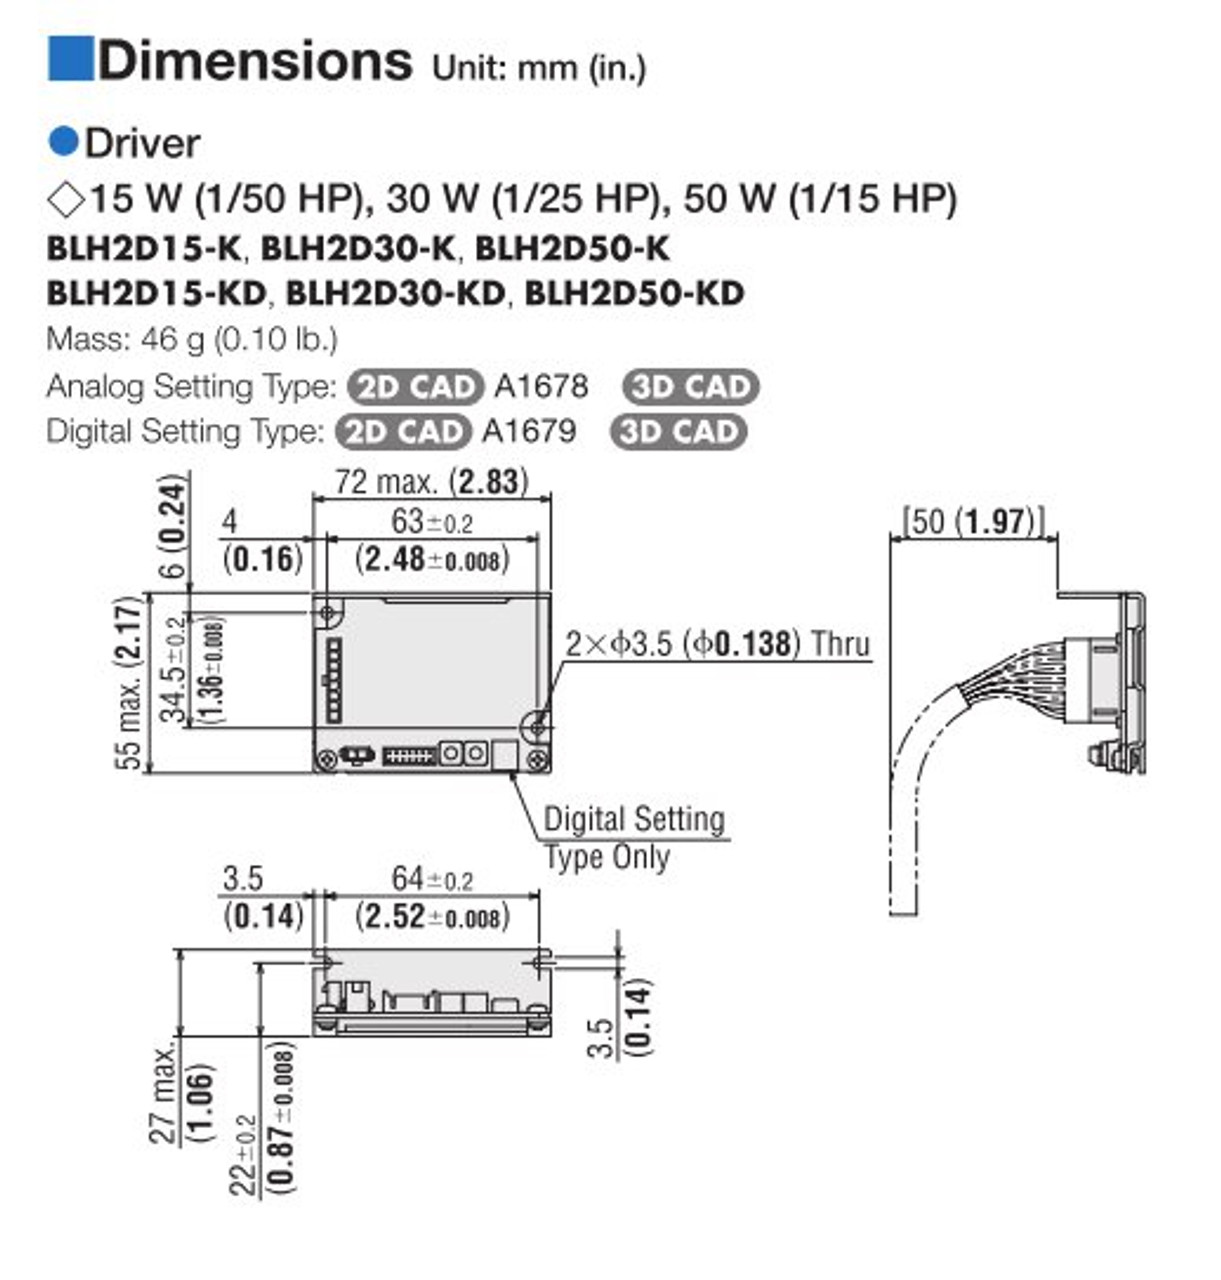 BLHM015K-15 / BLH2D15-KD - Dimensions